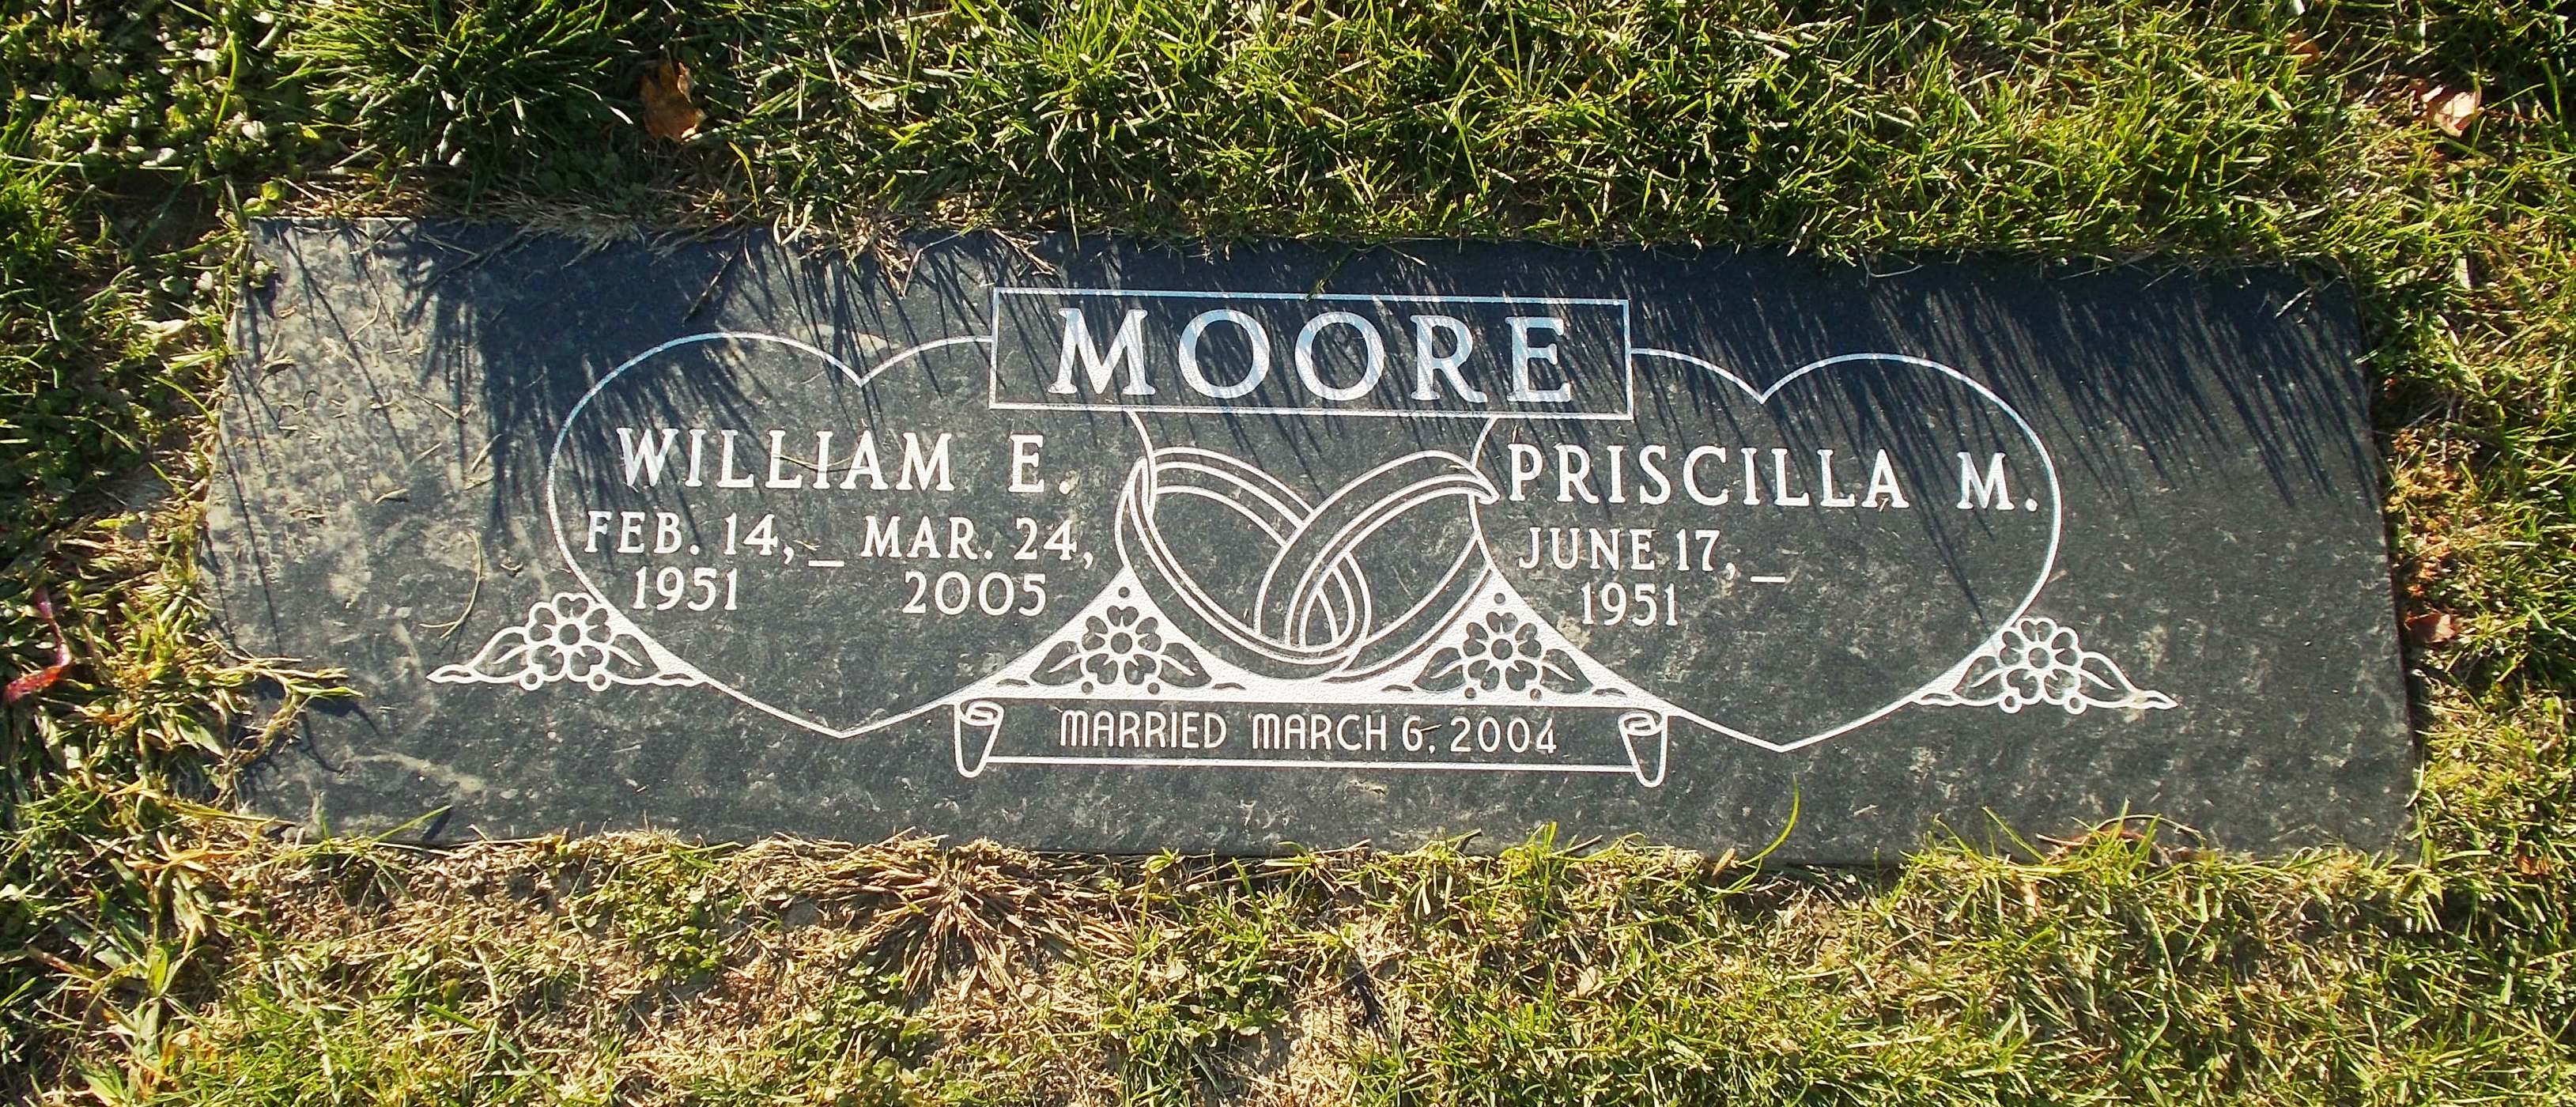 William E Moore